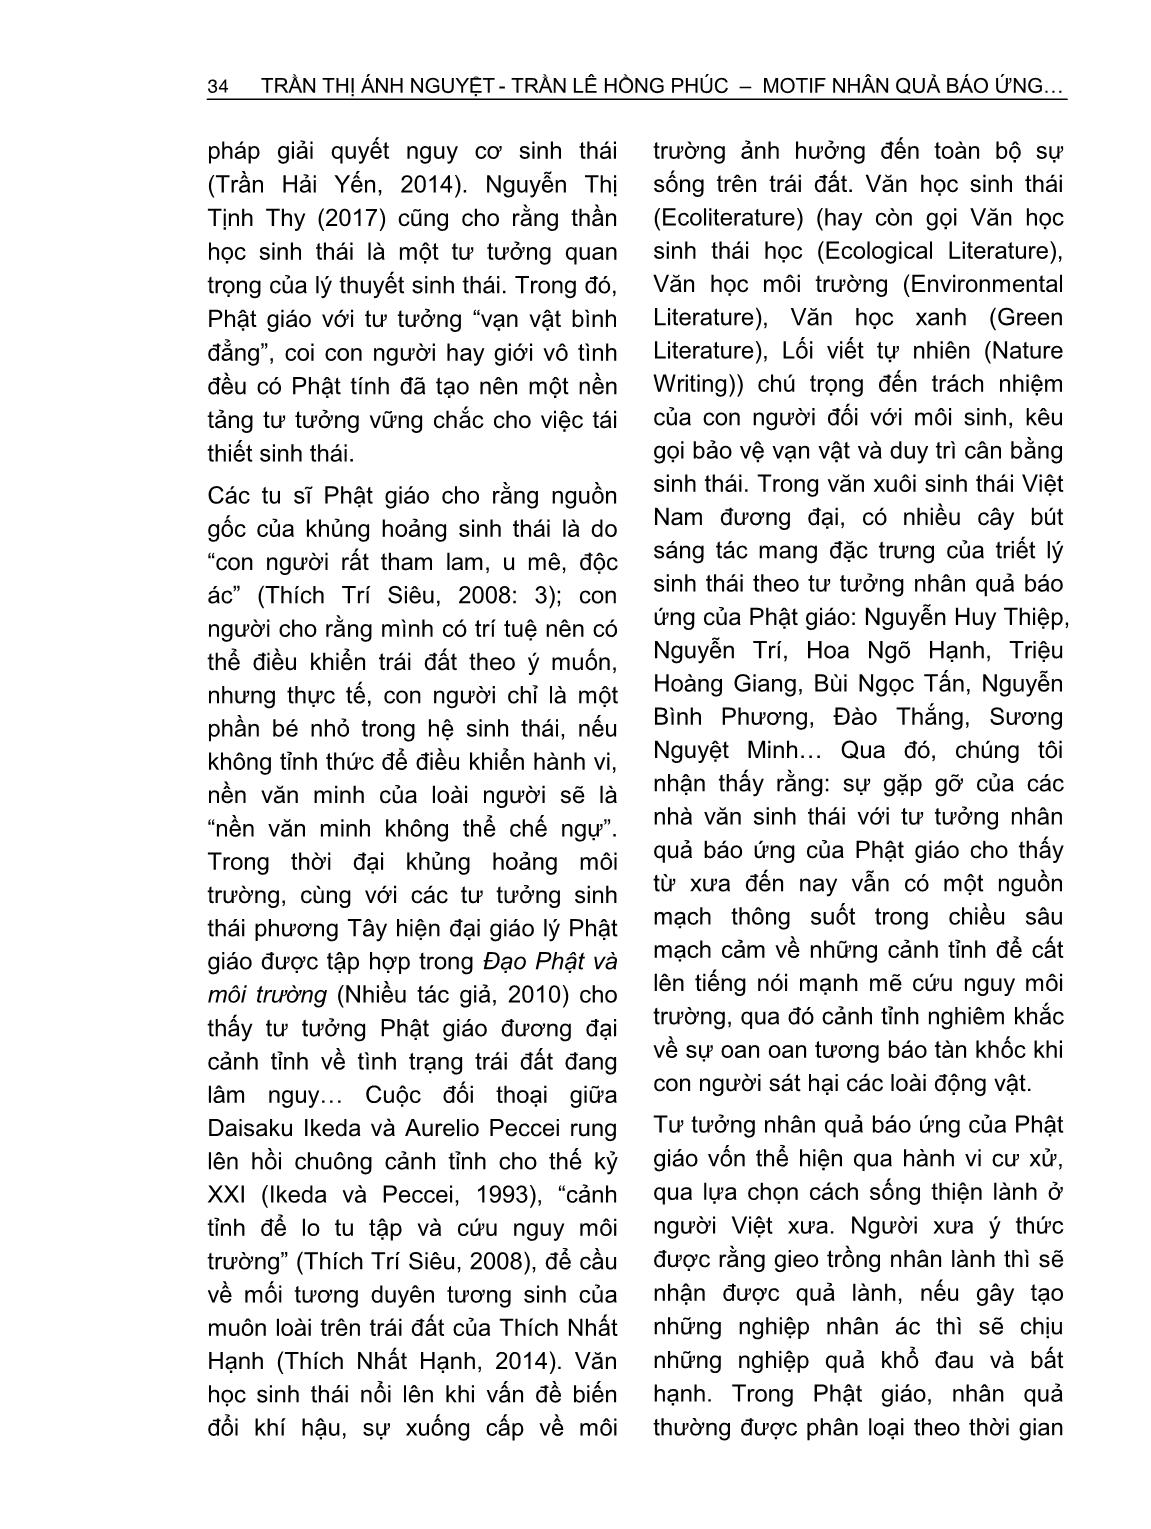 Motif nhân quả báo ứng trong văn xuôi sinh thái Việt Nam đương đại từ góc nhìn Phật Giáo trang 2